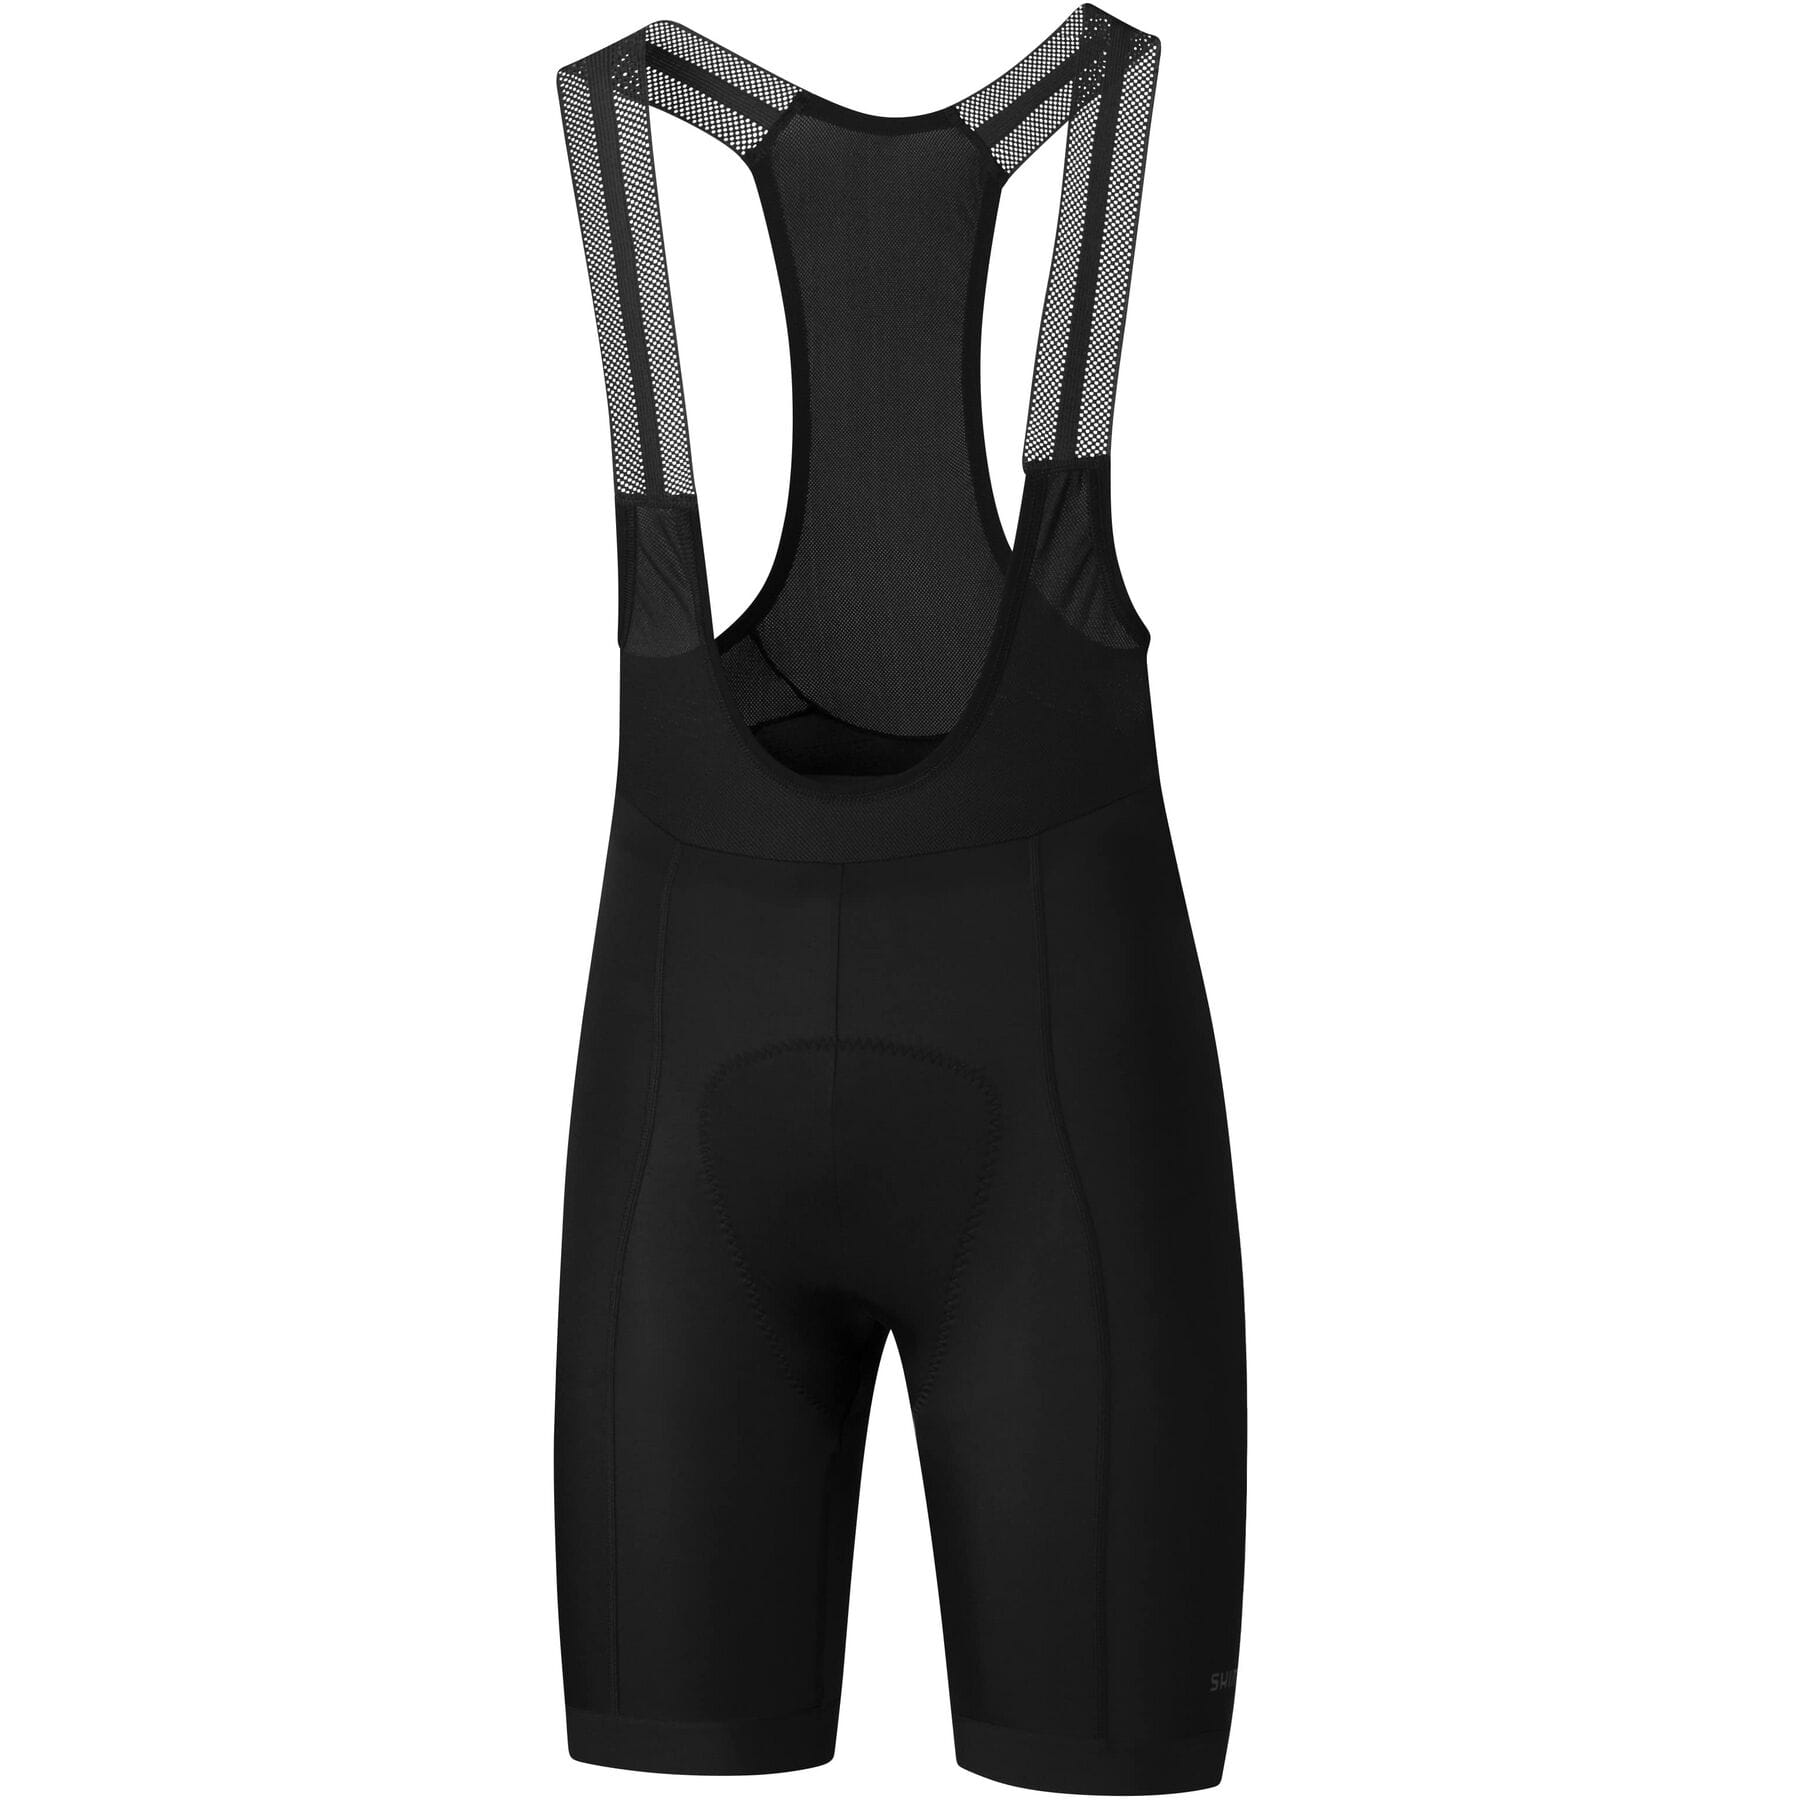 Shimano Bib Shorts - £80.99 | Shorts - Lycra Bib Road and Mtb | Cyclestore